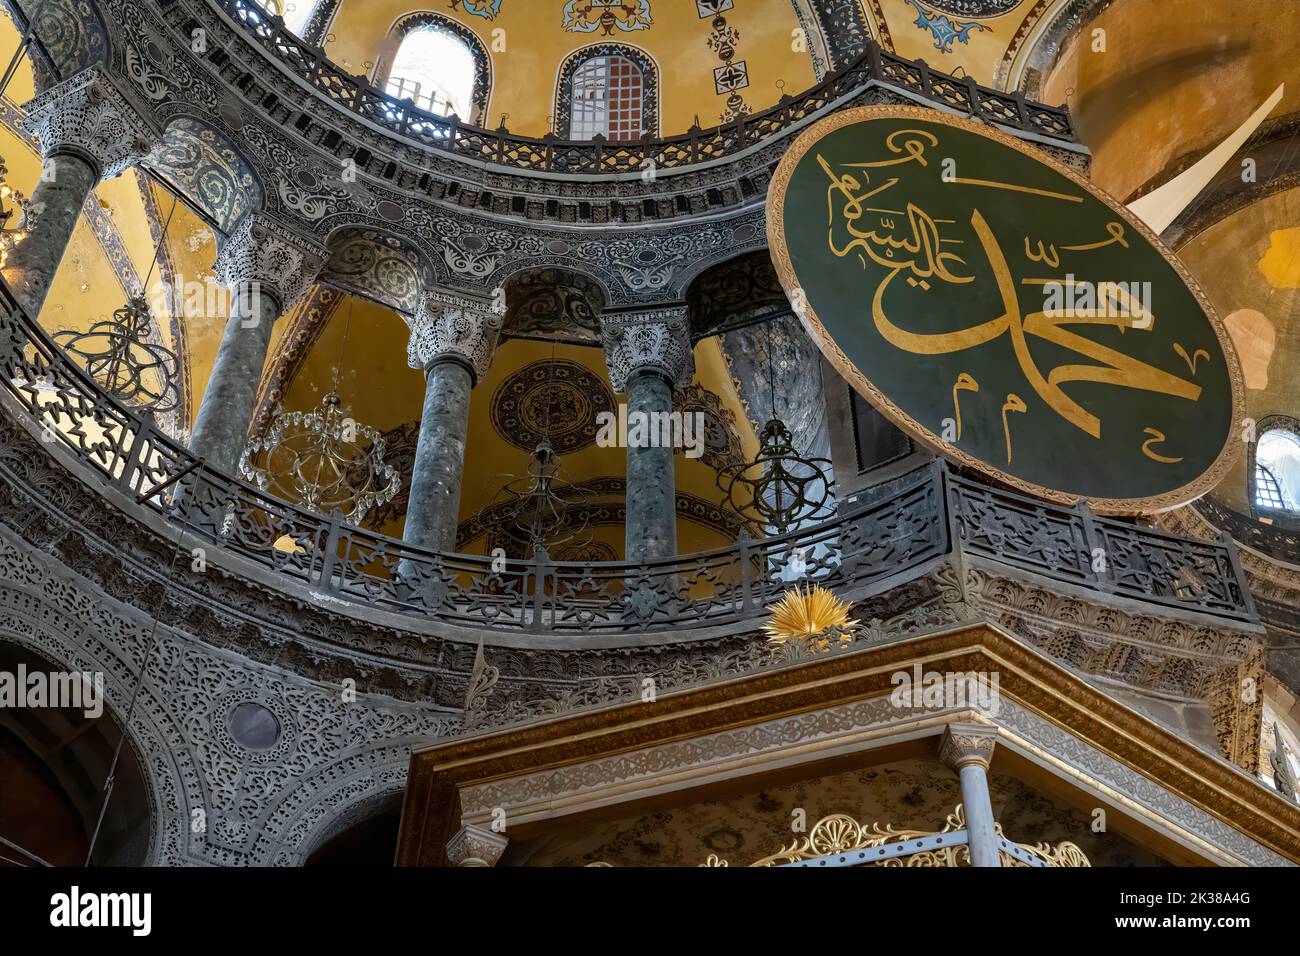 Conception interne de Sainte-Sophie ou appelée Aya Sophia, l'un des endroits les plus visités d'Istanbul. Montrant le nom du prophète Mohamad Banque D'Images